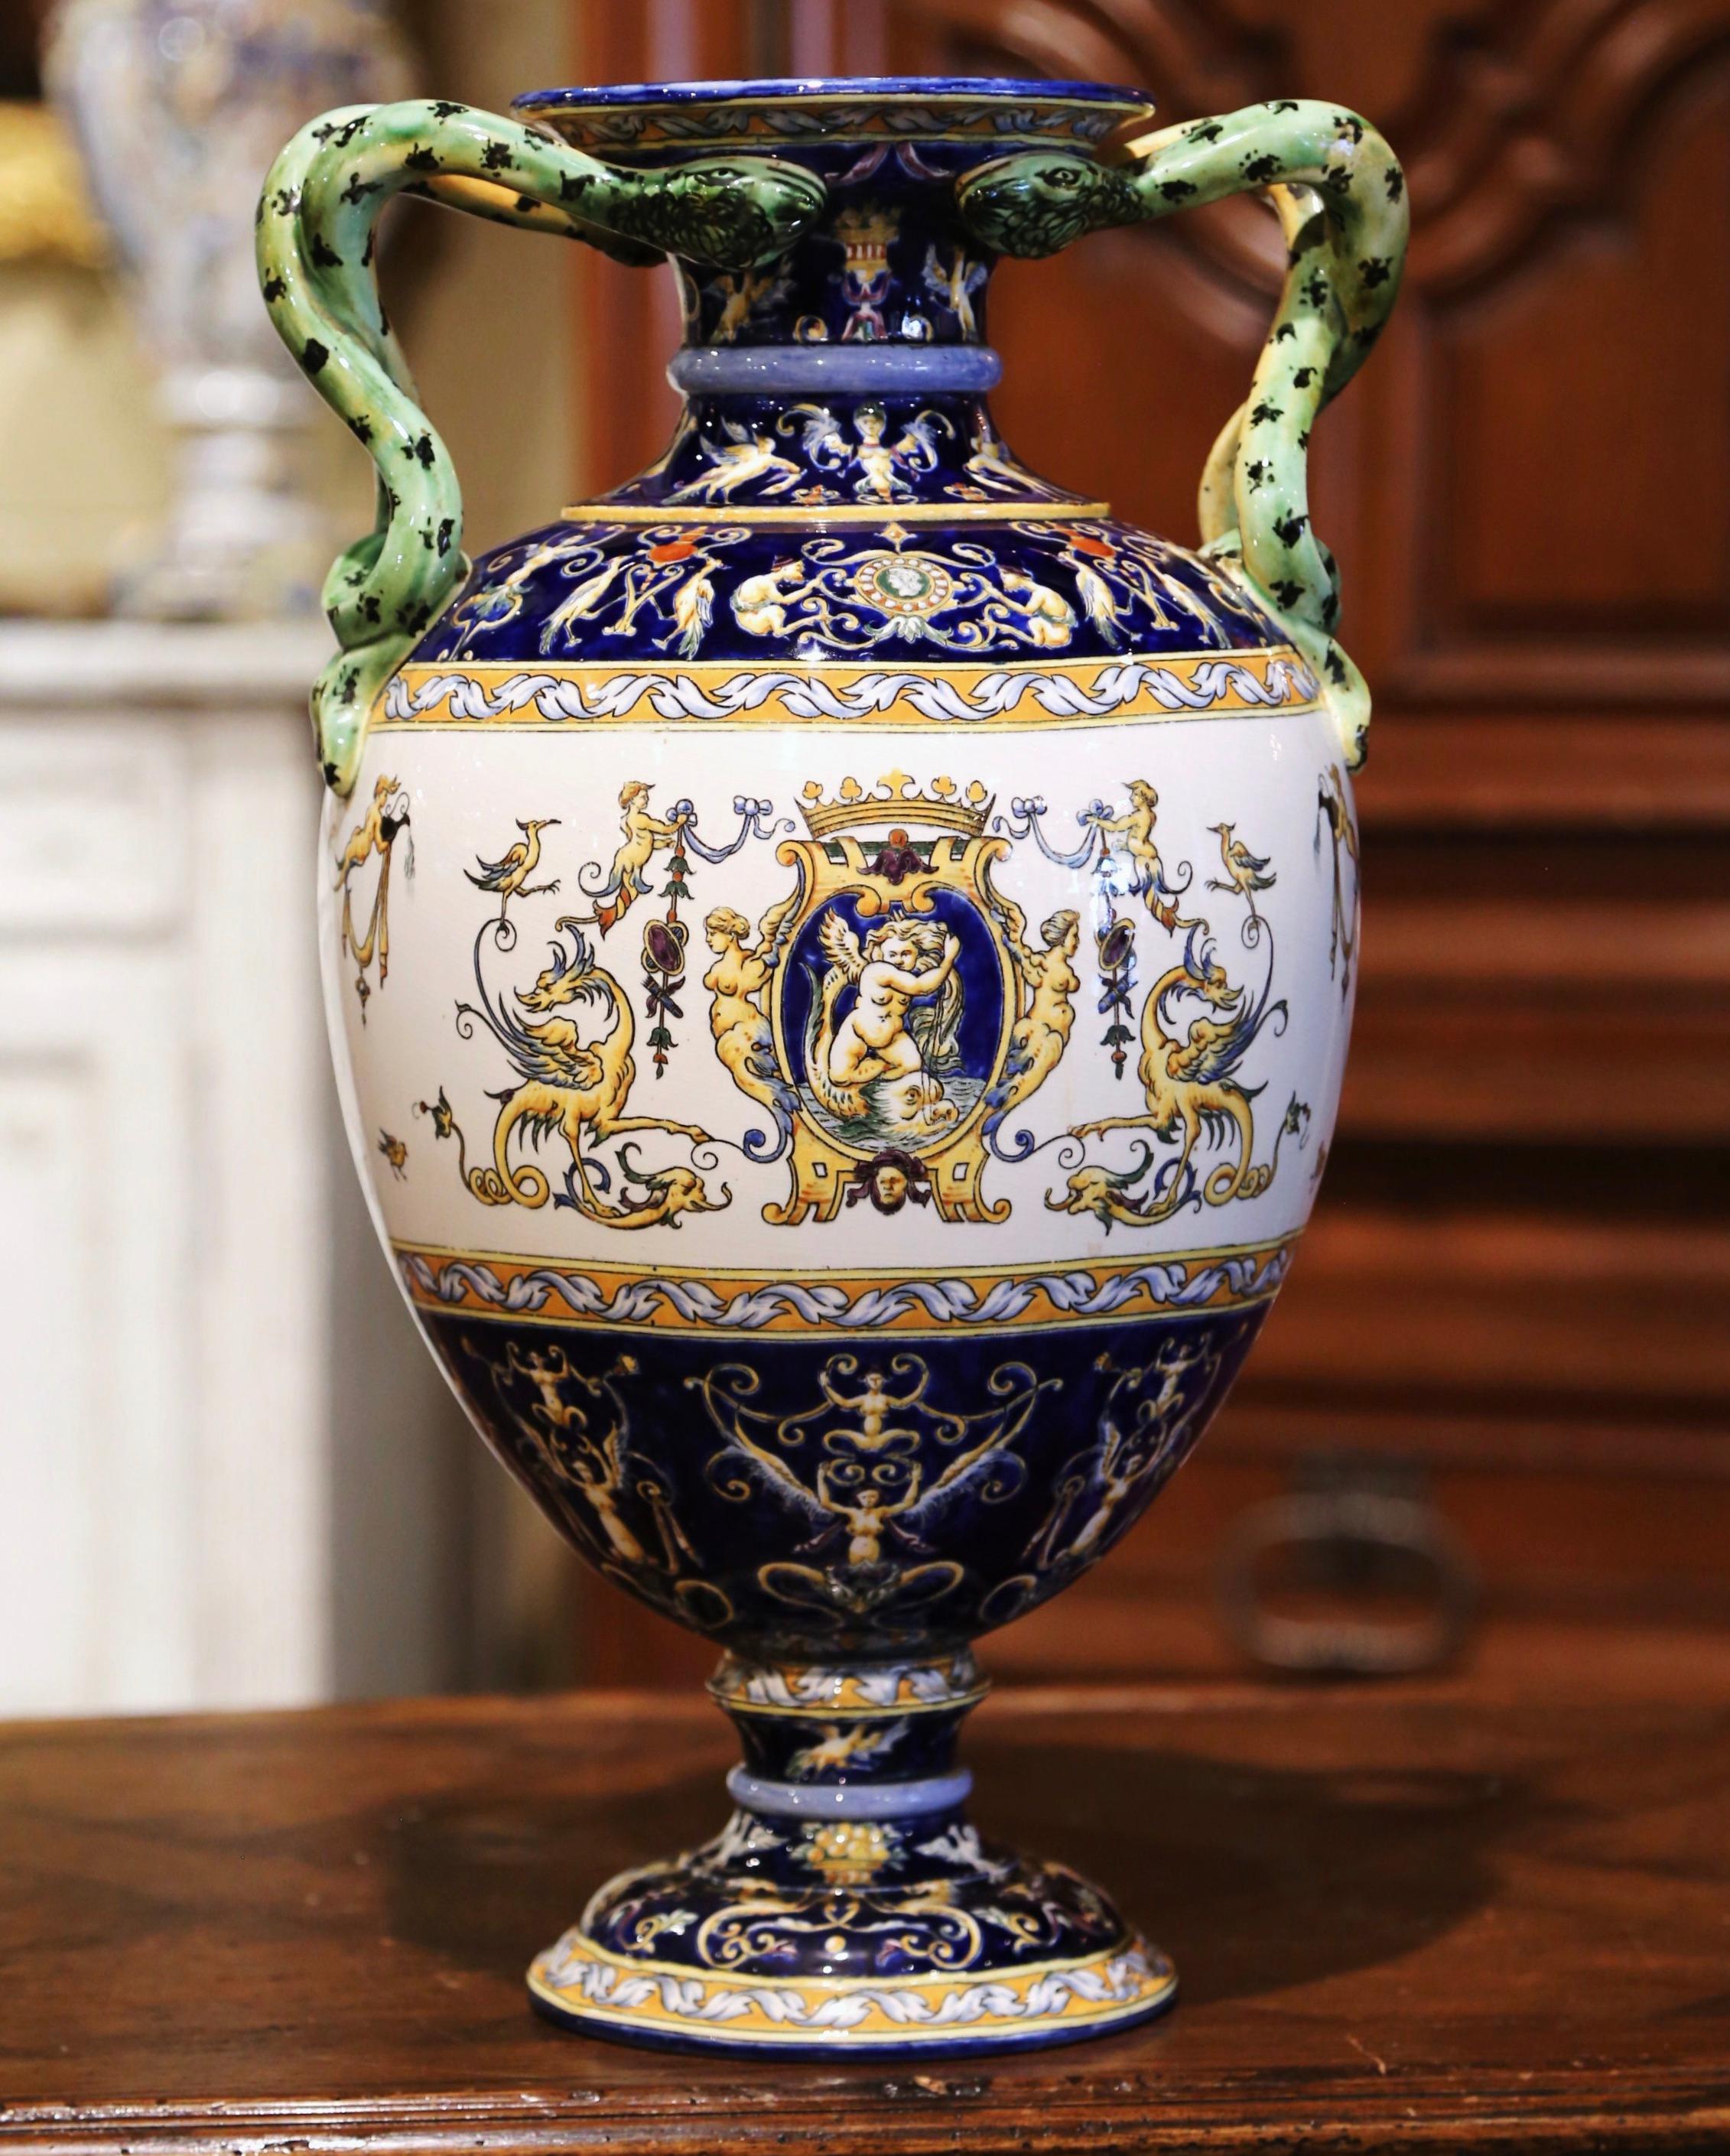 Créé en France vers 1890 par la faïencerie de Gien, ce vase ancien est de forme ronde et repose sur une base circulaire décorée de motifs d'oiseaux et de feuilles. Le grand récipient présente deux anses en forme de serpent torsadé sur le bord coloré